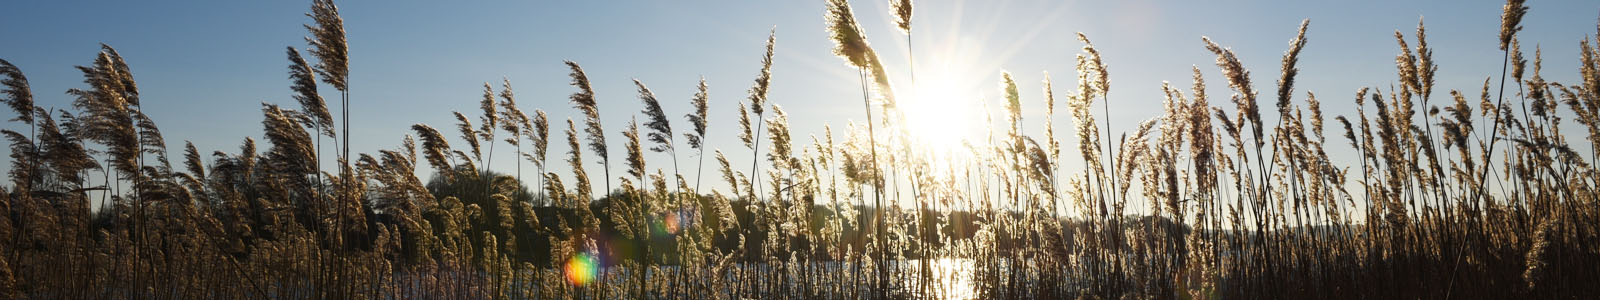 Gräser mit Getreide in Sonnenstrahlen ©Feuerbach